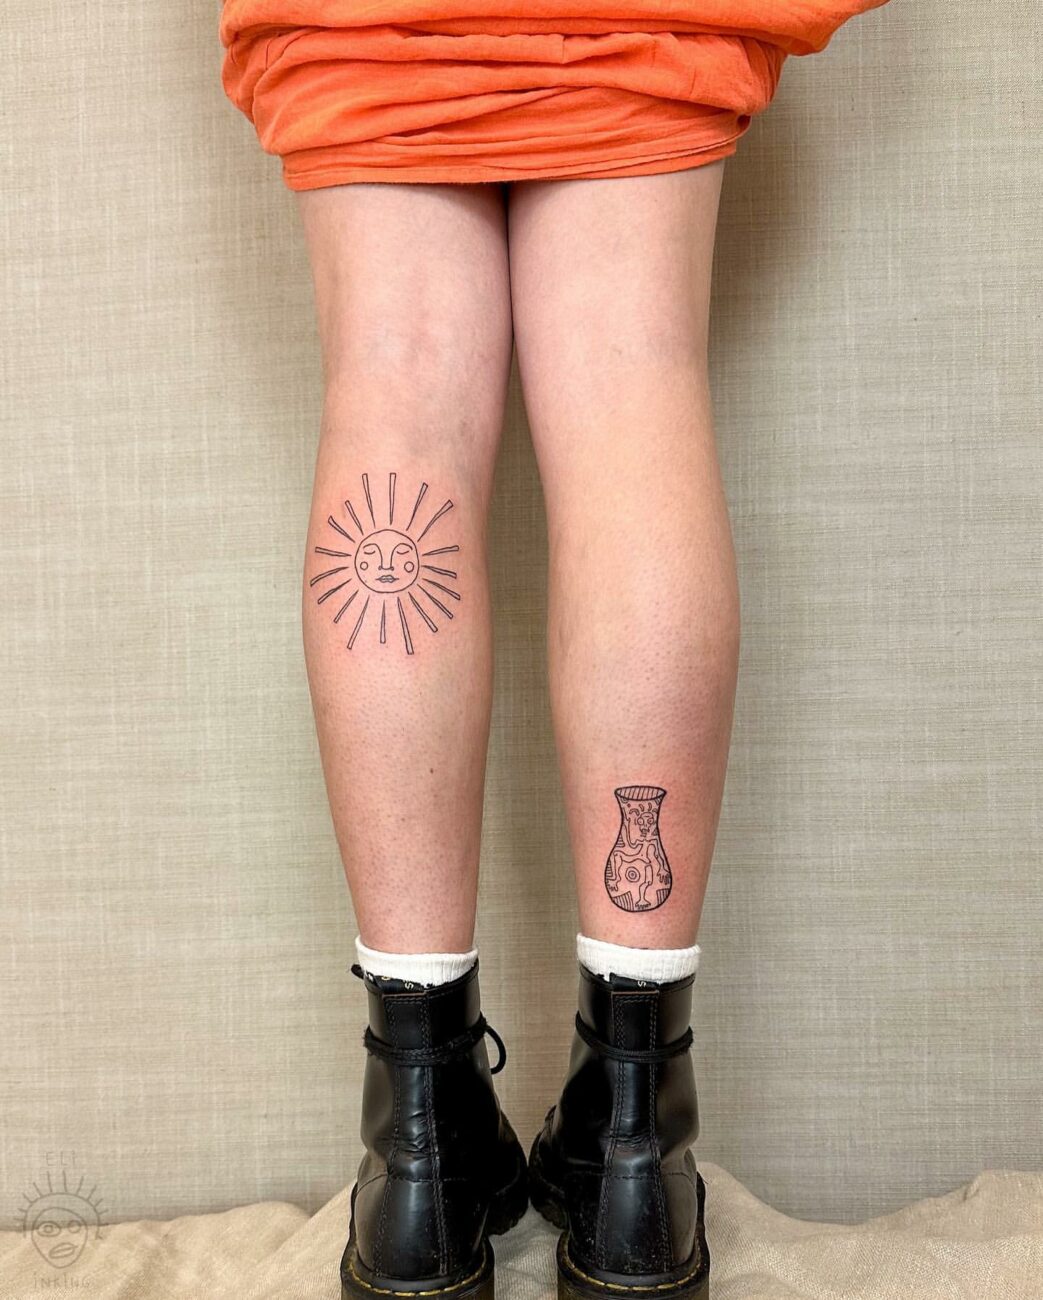 female calf tattoo